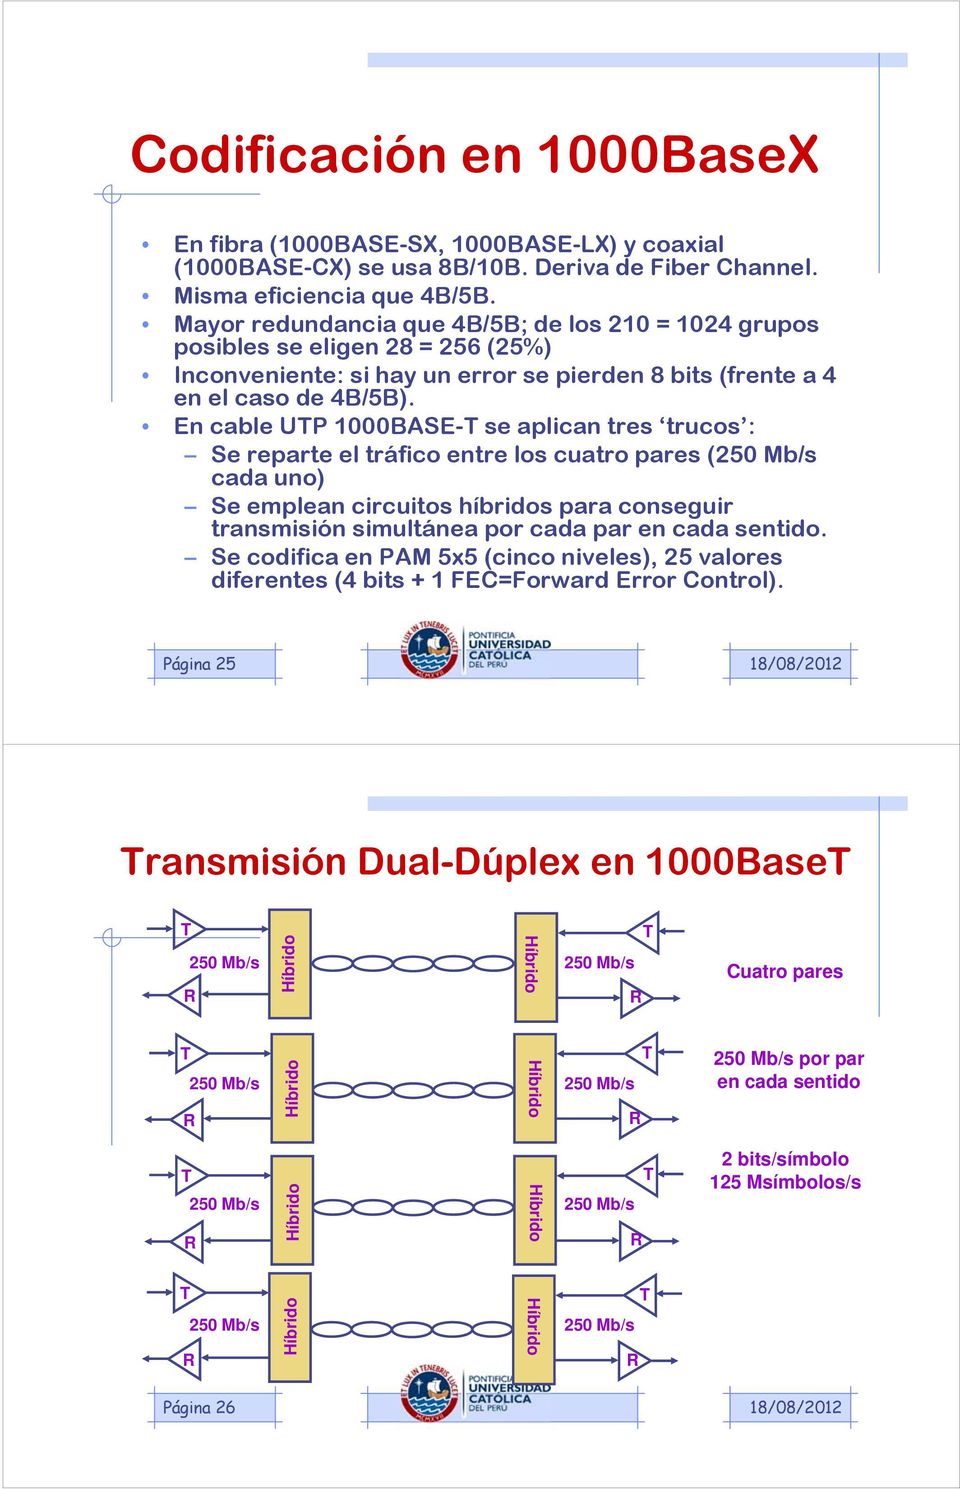 En cable UTP 1000BASE-T se aplican tres trucos : Se reparte el tráfico entre los cuatro pares (250 Mb/s cada uno) Se emplean circuitos híbridos para conseguir transmisión simultánea por cada par en